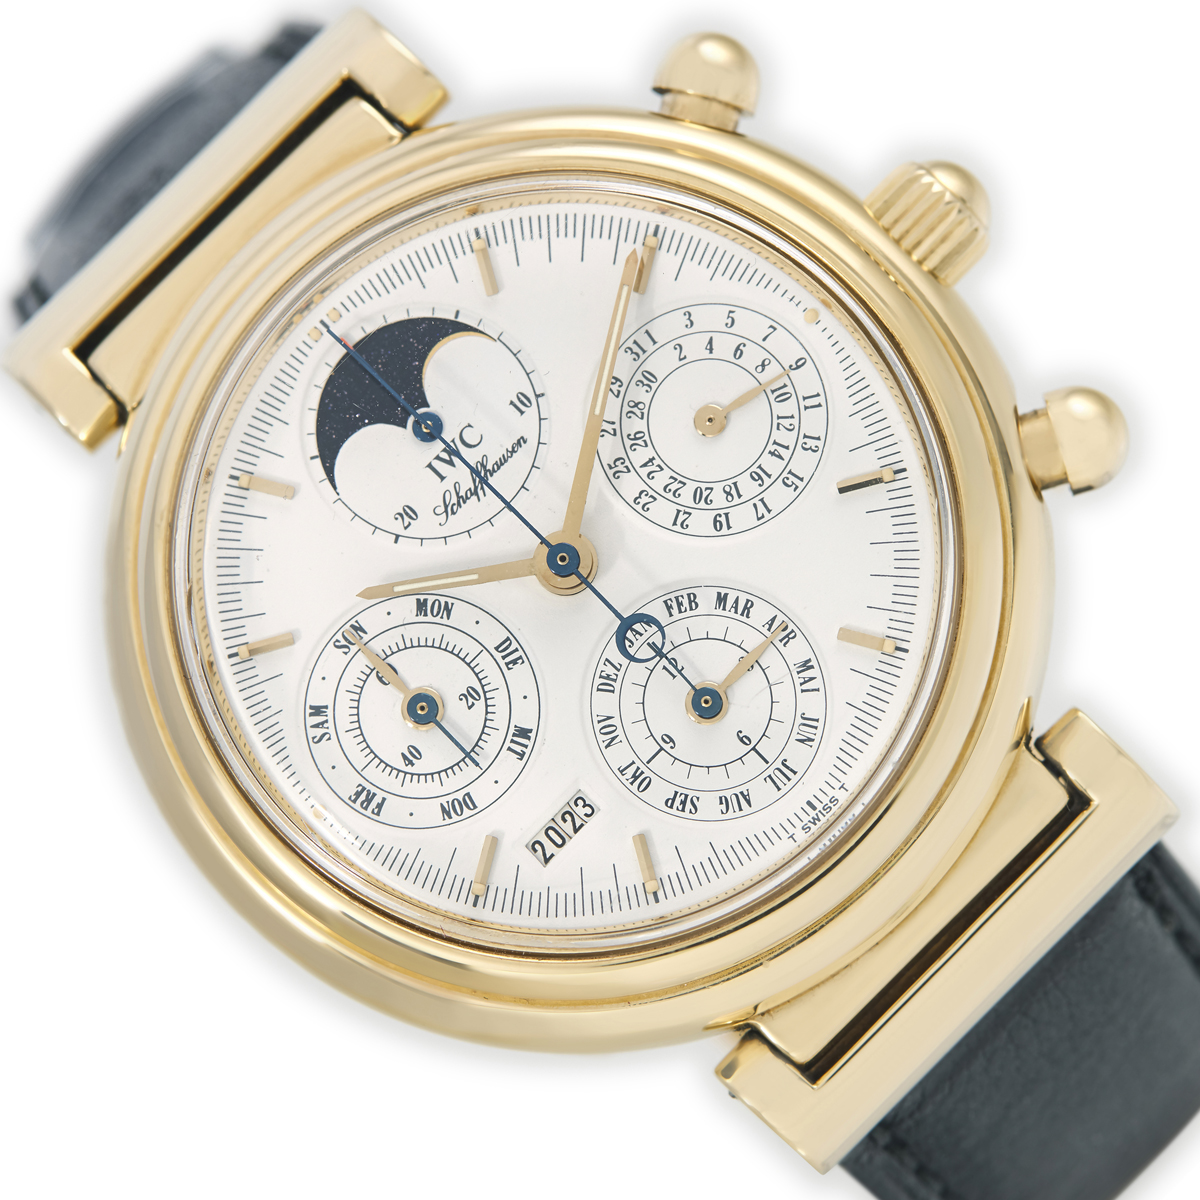 Da Vinci Ref. 3750 18ct Gold watch